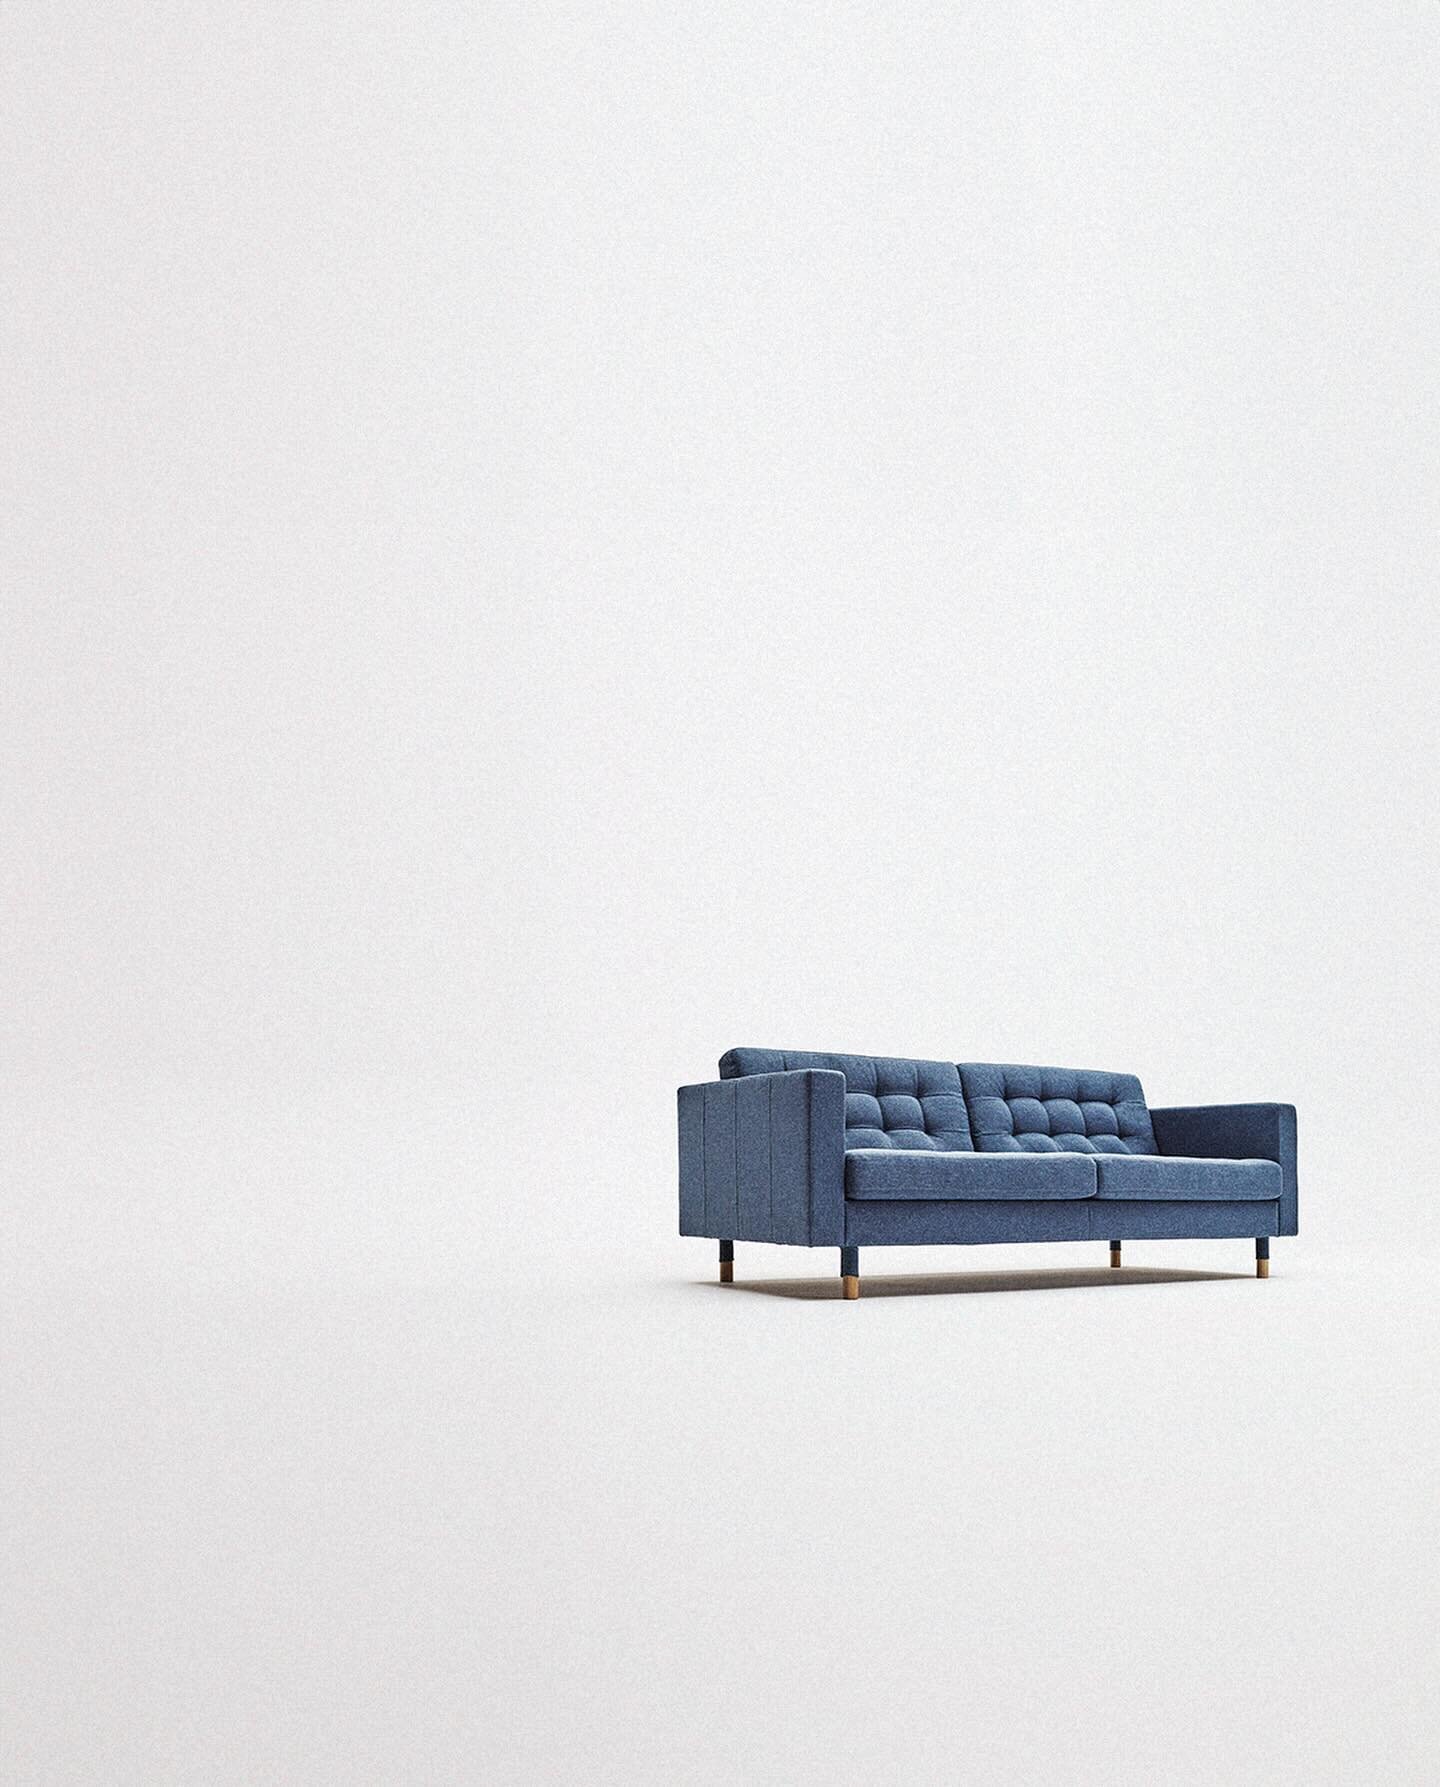 Ikea for @ikea
🏰 @tryreklame
💡 @caroline.riis
💡 @eiriksorensen
🎠 @einarfilm
🎠 @hestagentur